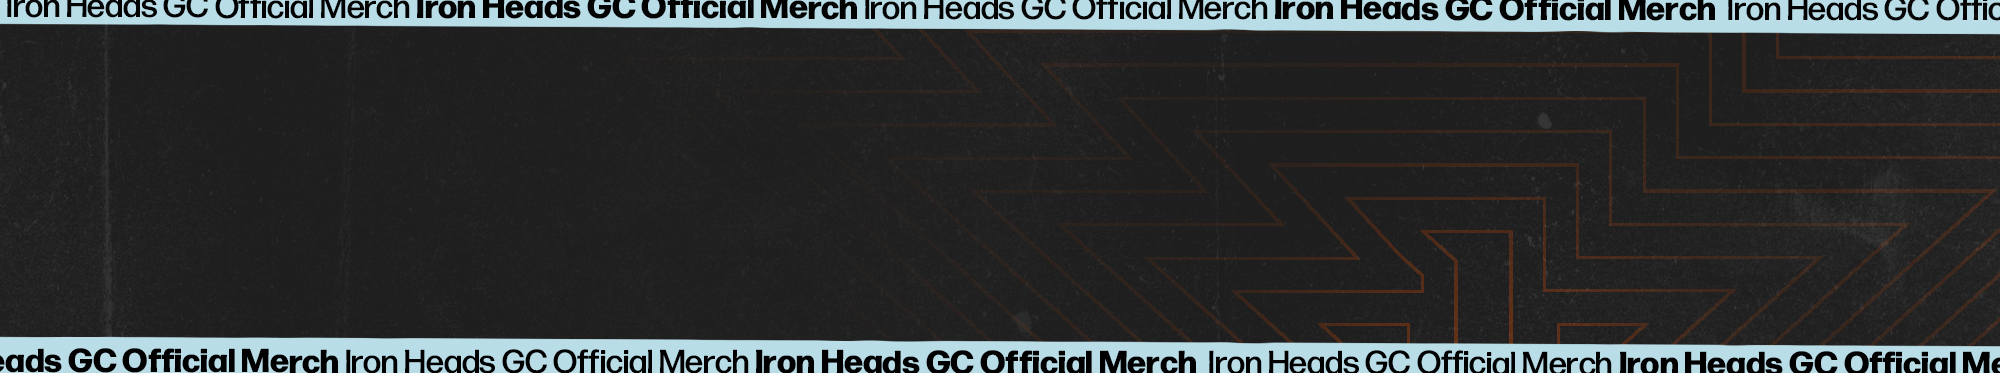 Iron Heads GC background image